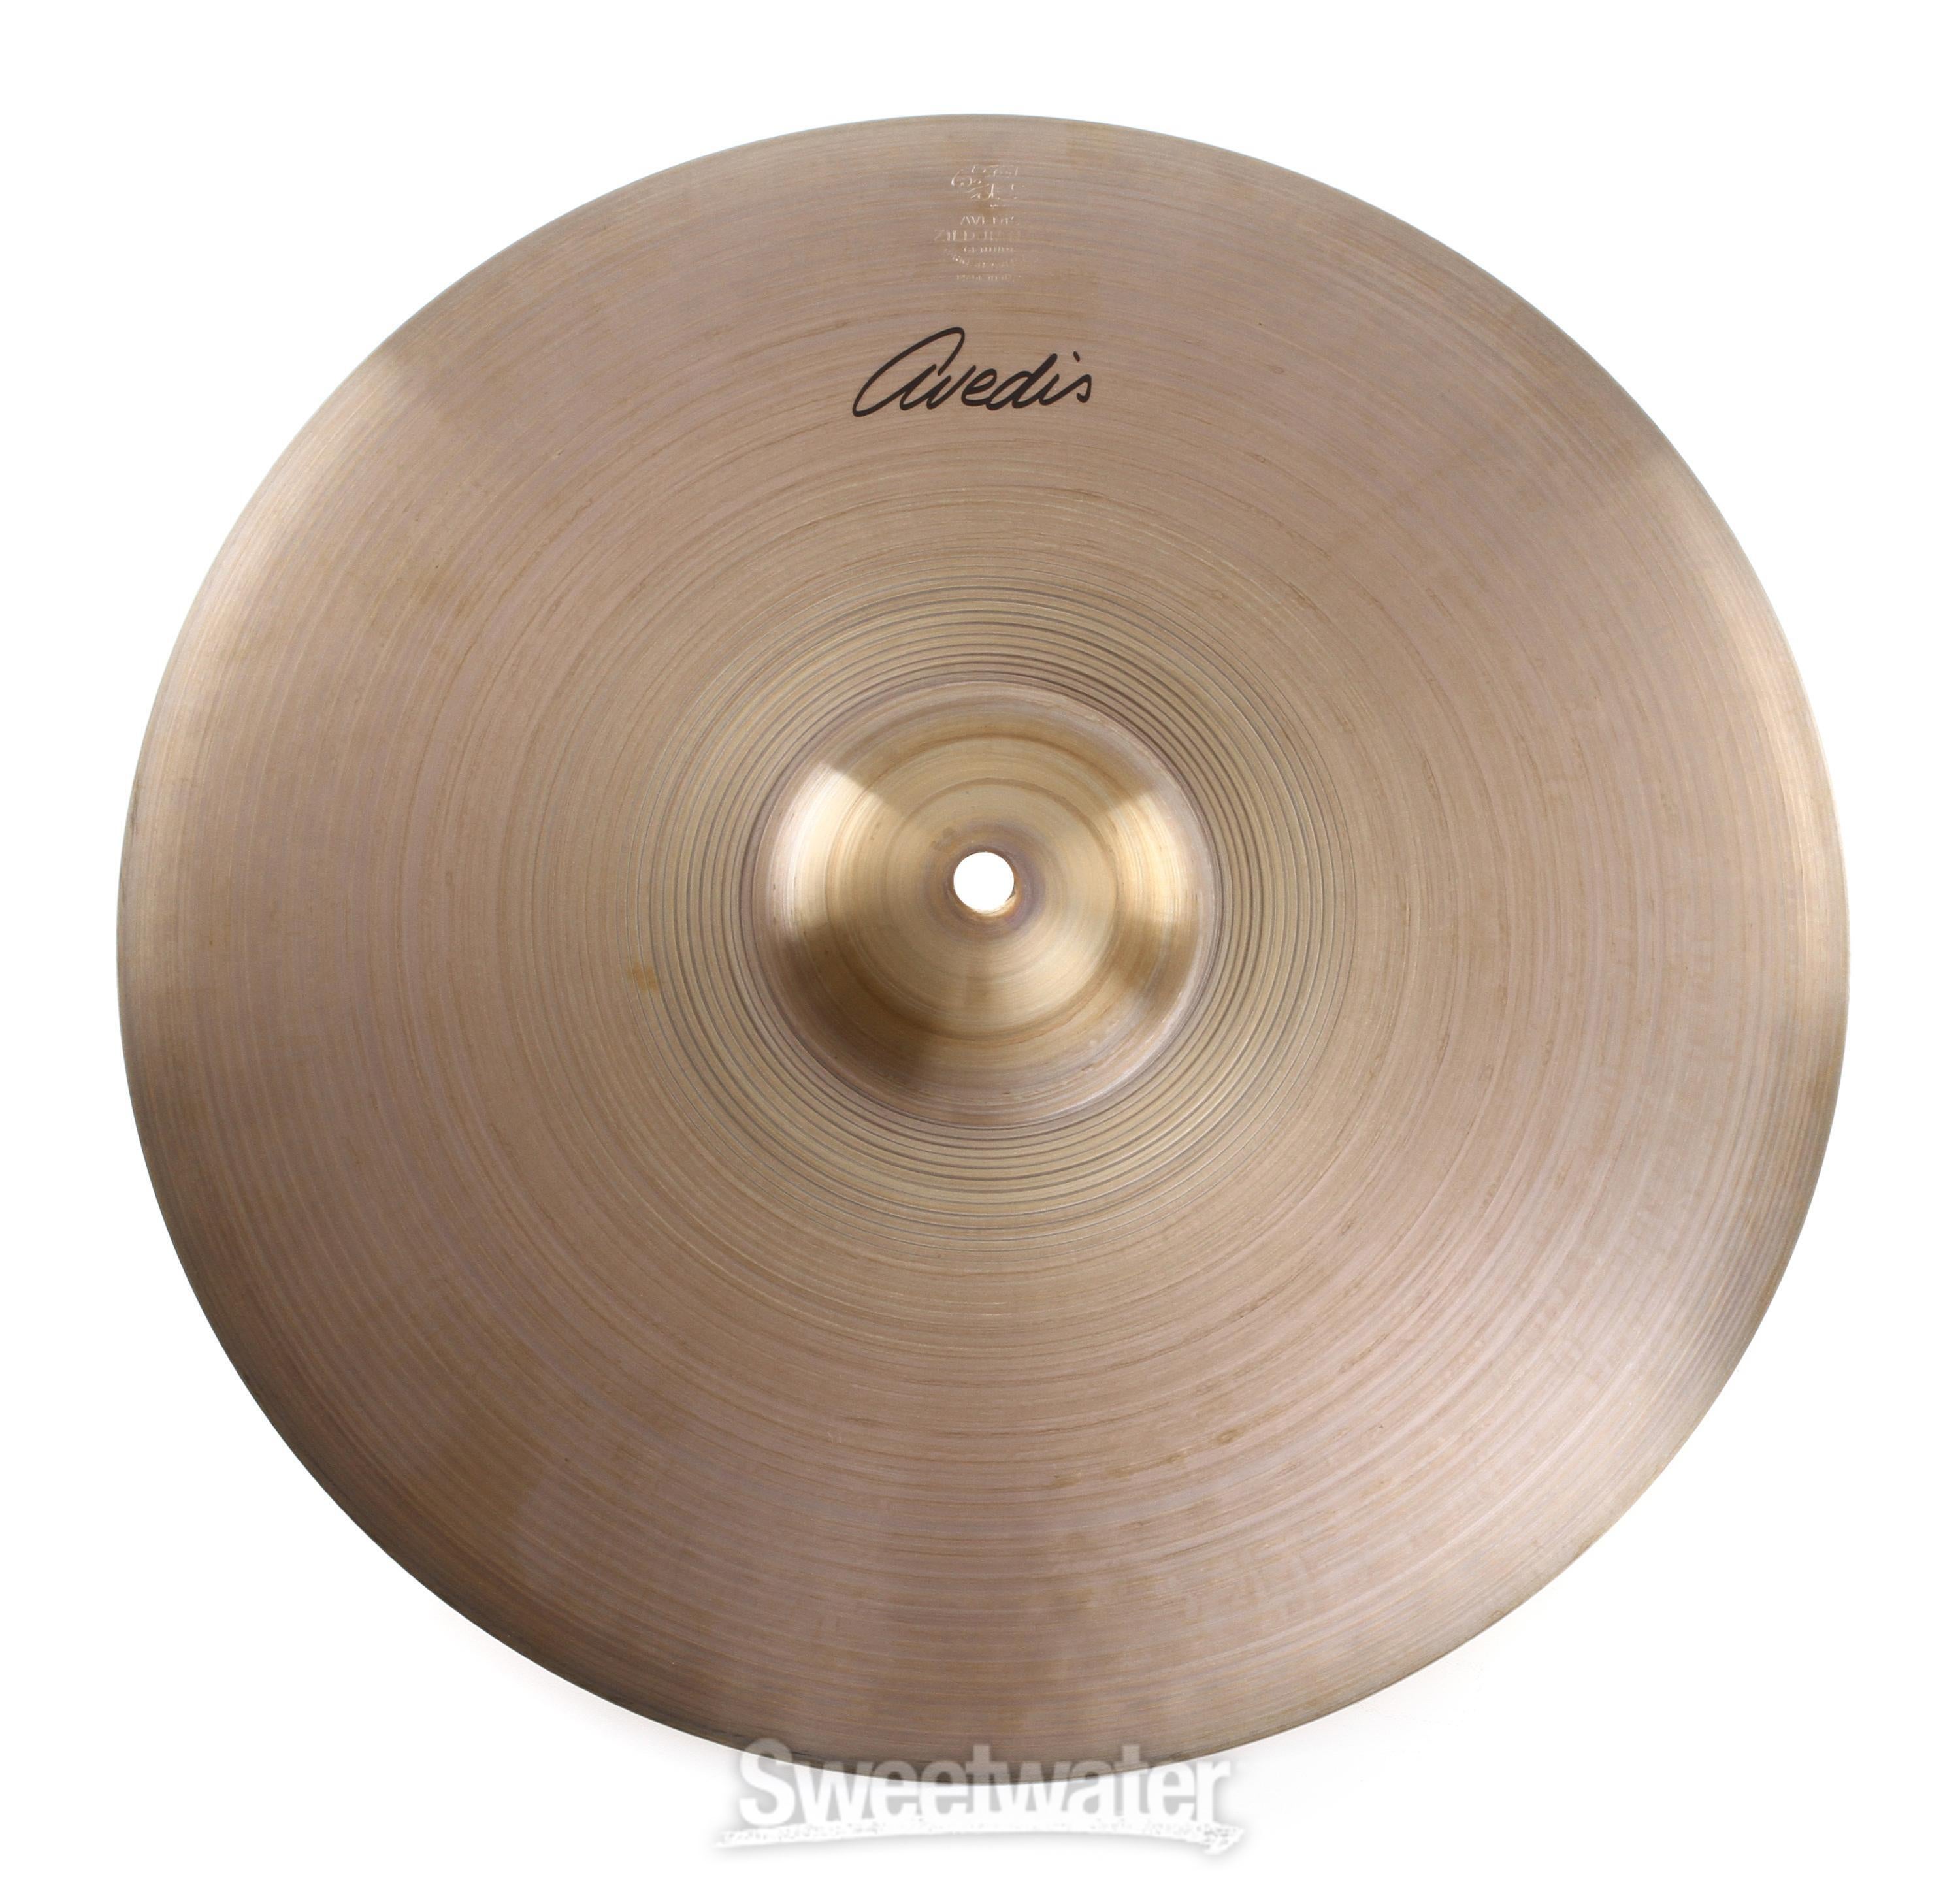 Zildjian 15 inch A Avedis Hi-hat Cymbals | Sweetwater